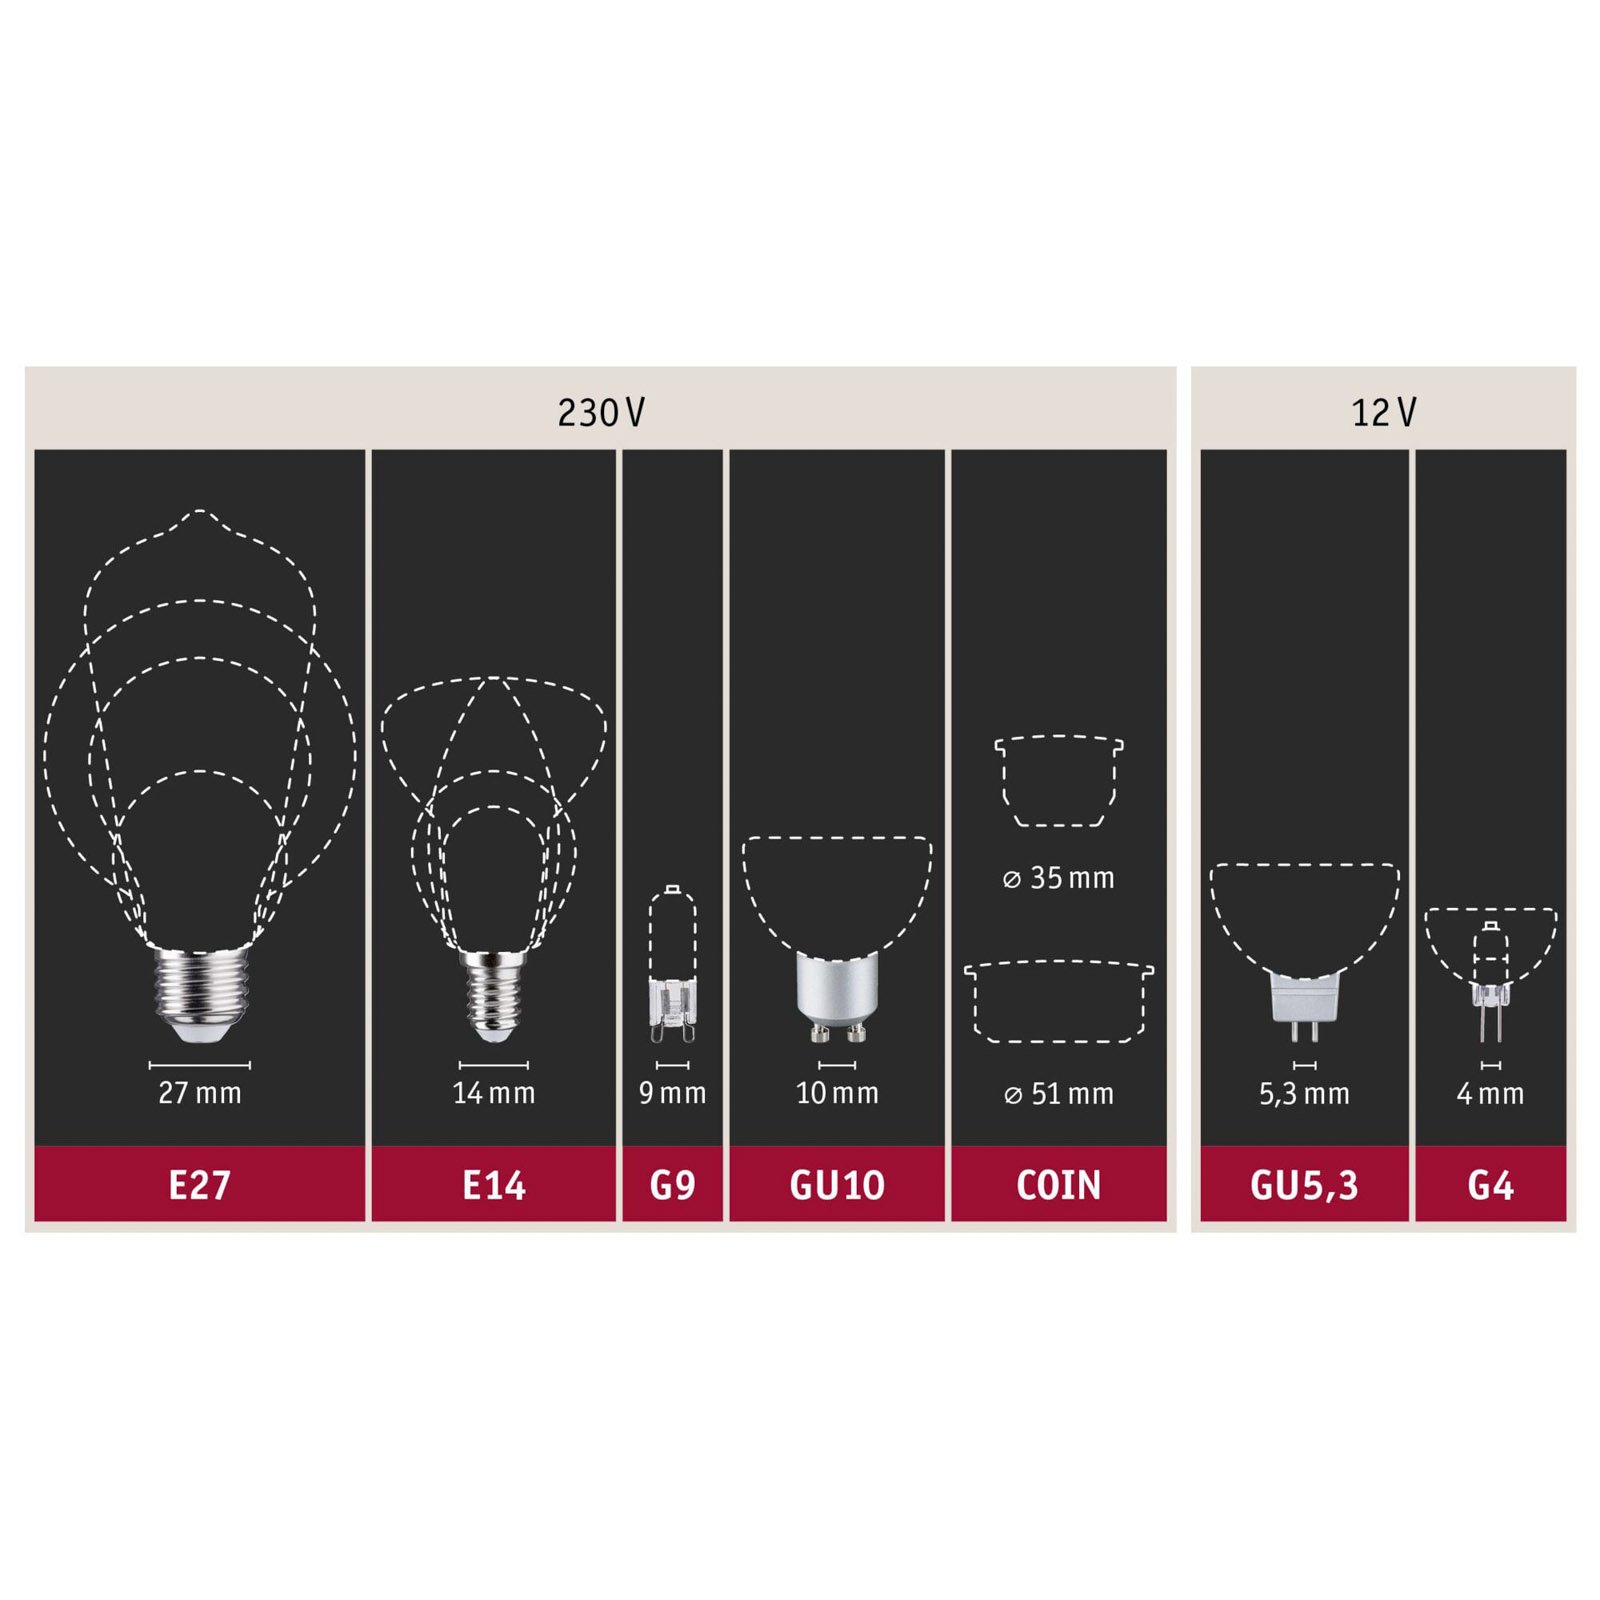 LED-lampa E14 827 huvudspegel silver 4,8W dimbar